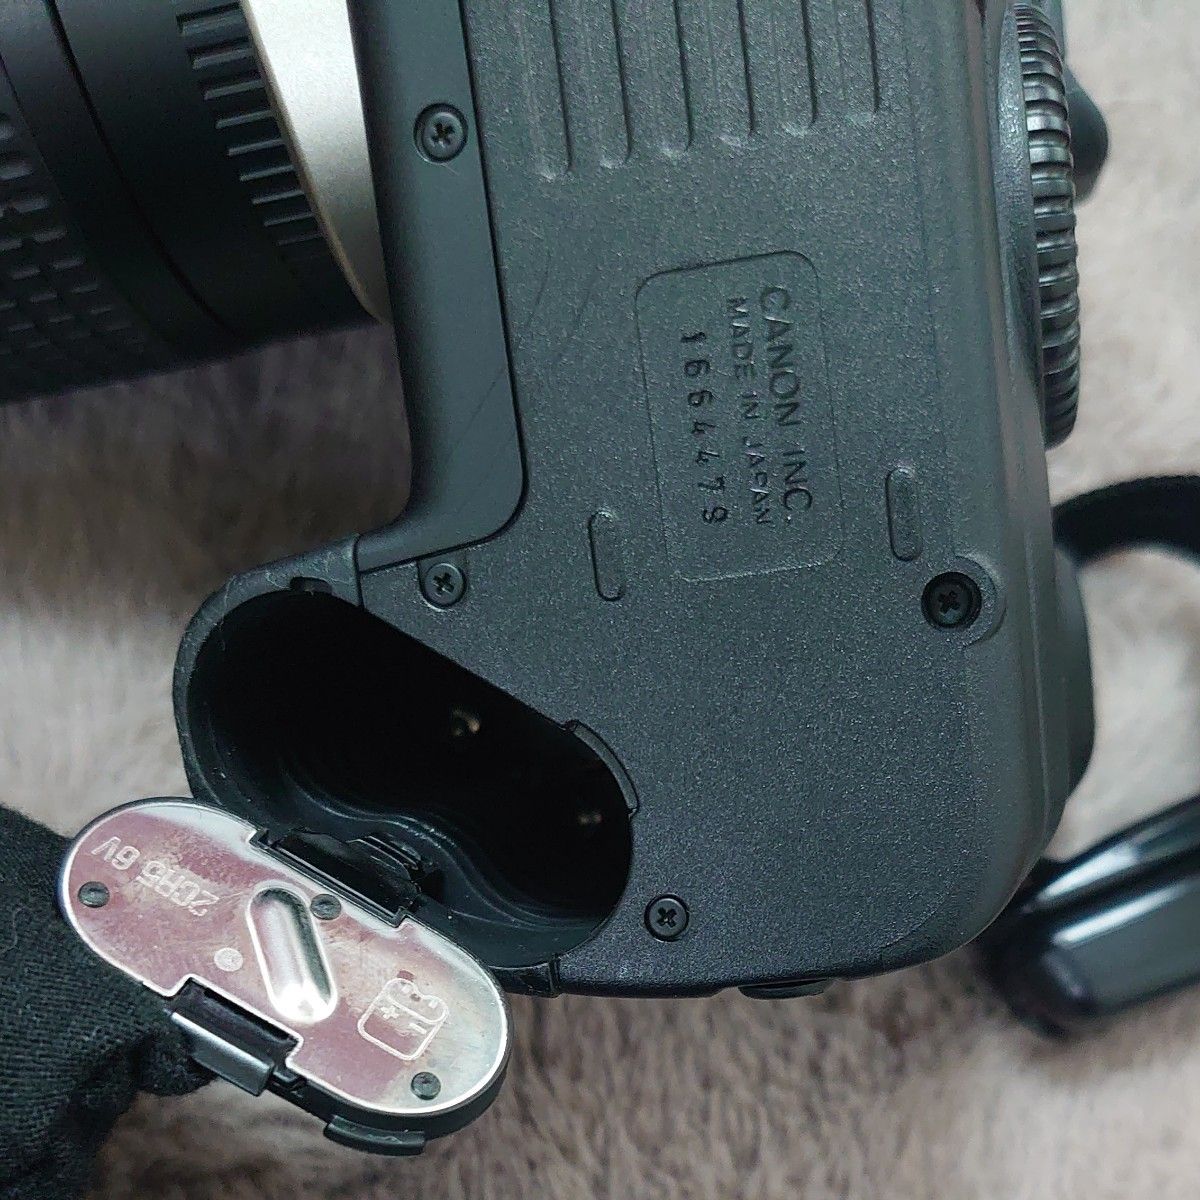 【Canon】 キャノン EOS55 一眼レフカメラ フィルムカメラ レンズ28-80mm